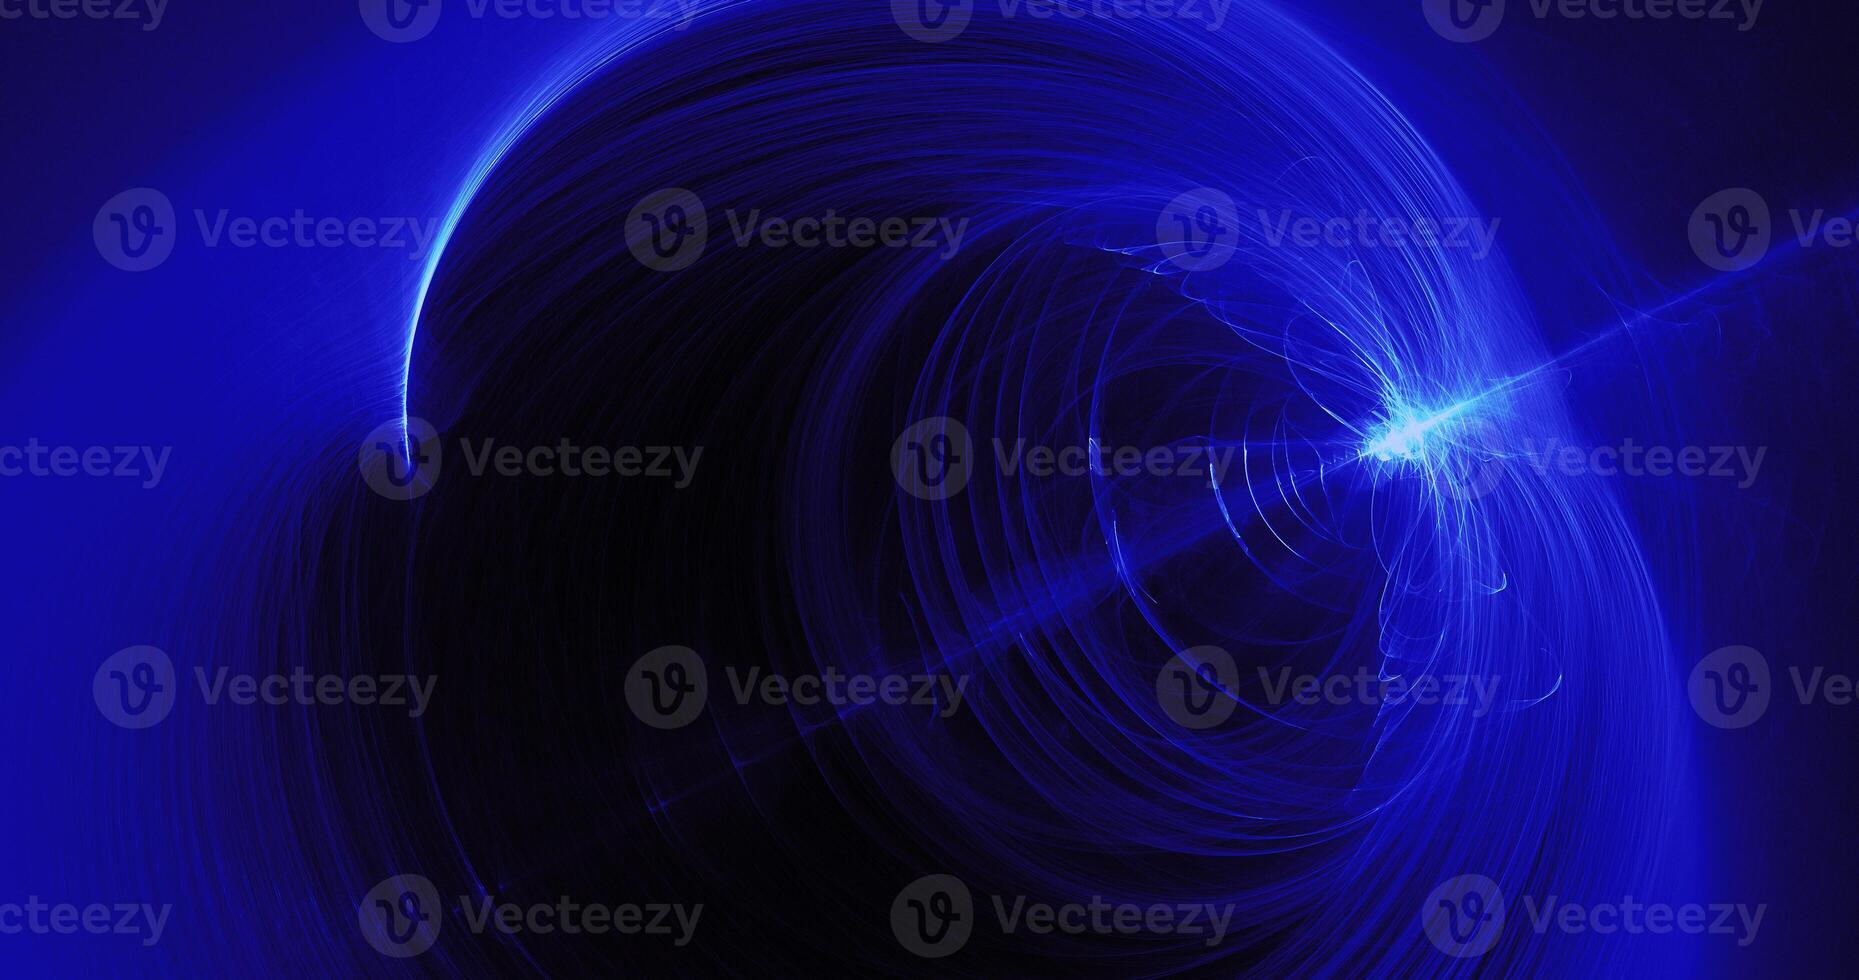 blå abstrakt rader kurvor partiklar bakgrund foto